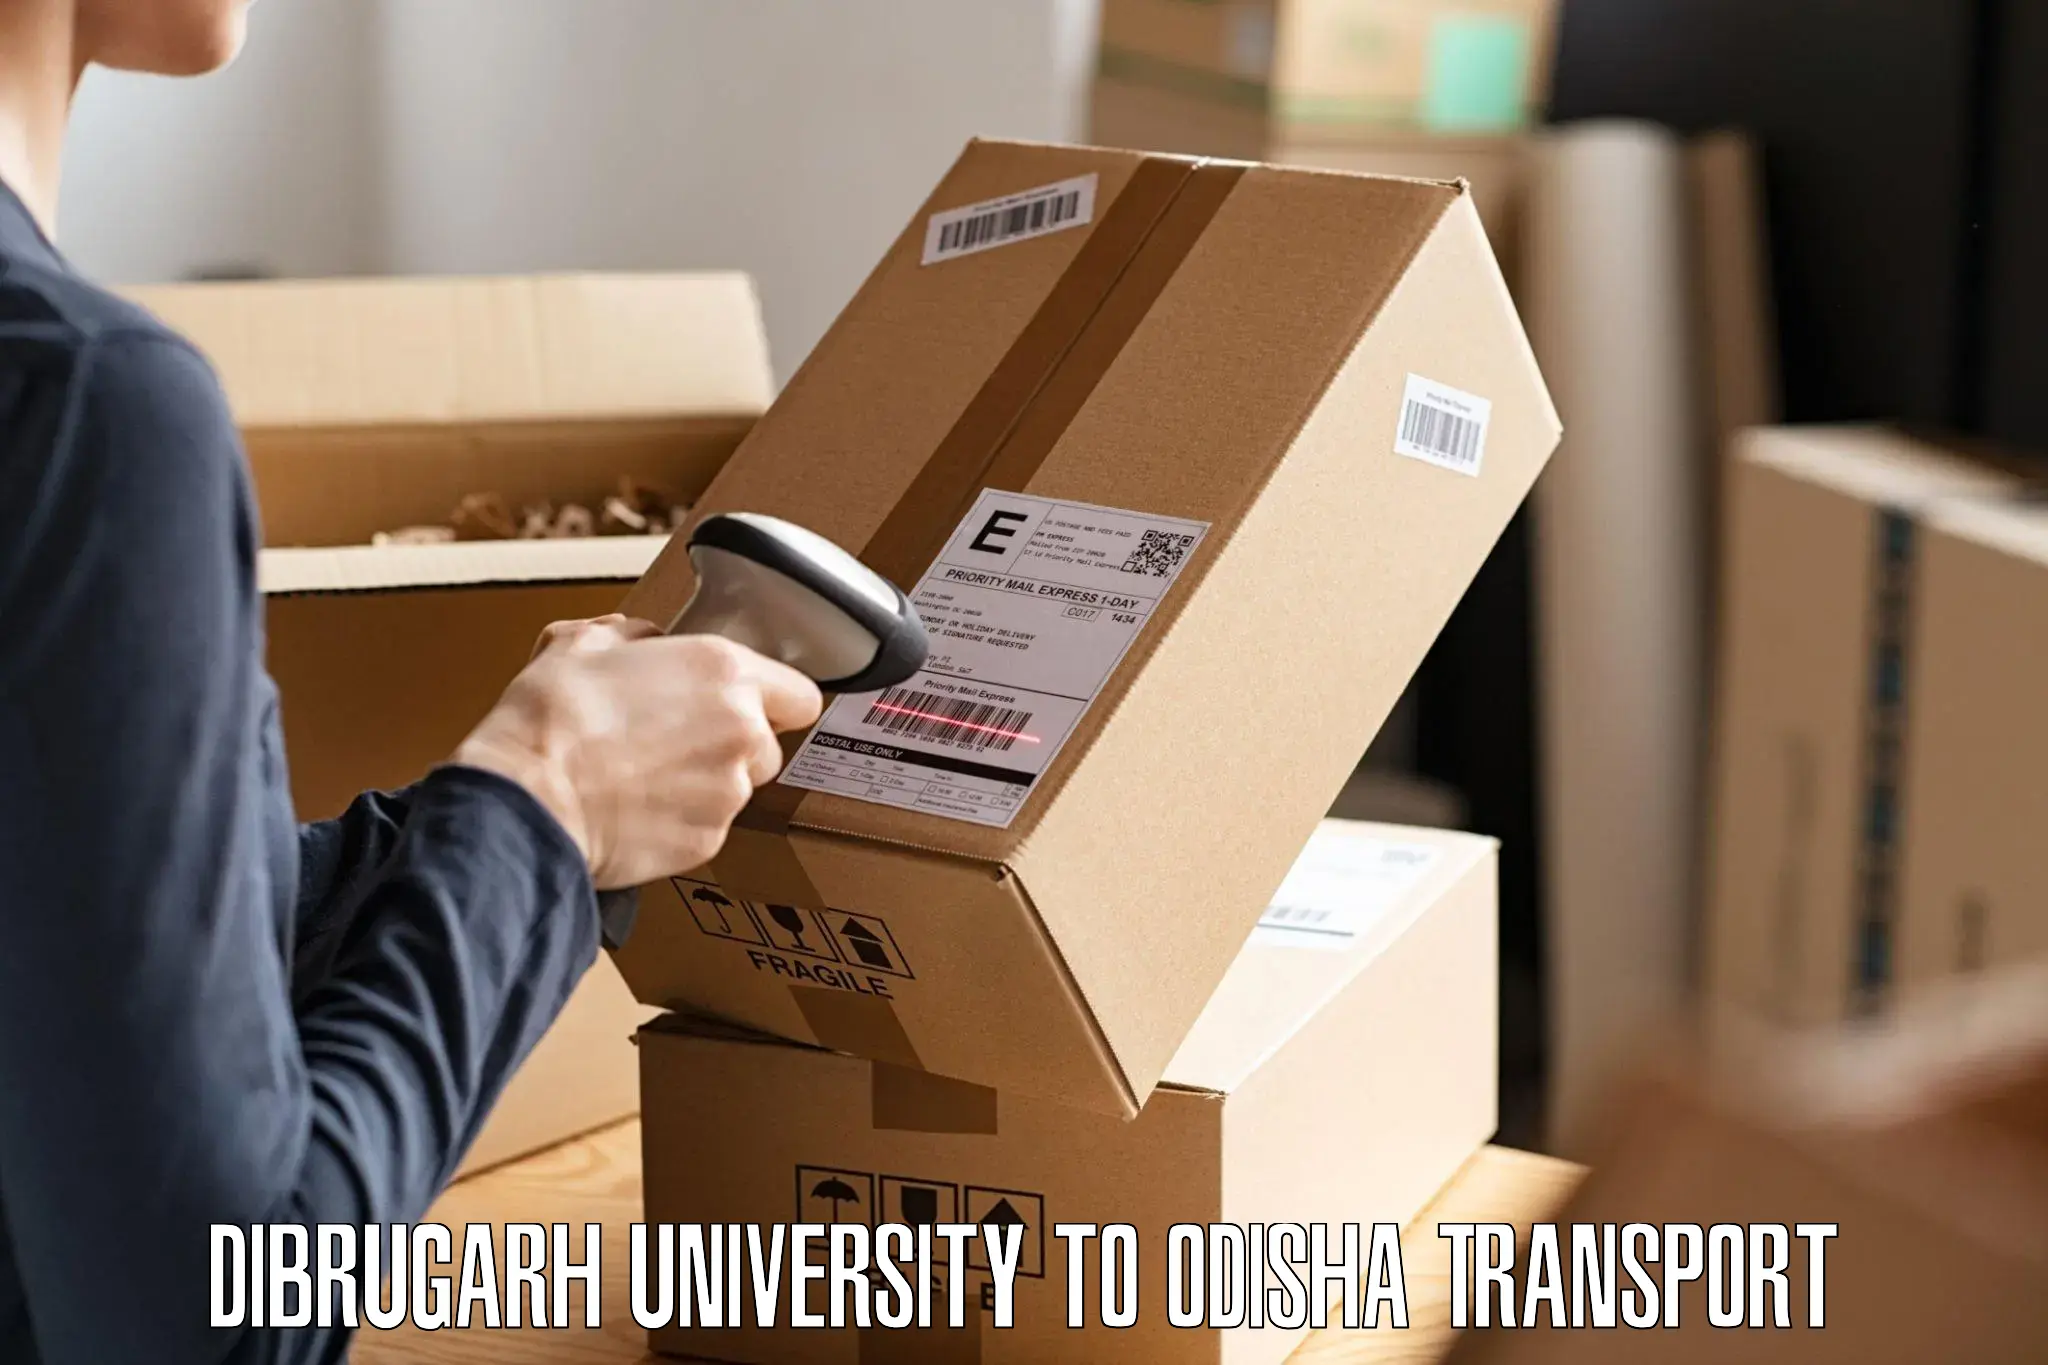 Furniture transport service Dibrugarh University to Balikuda